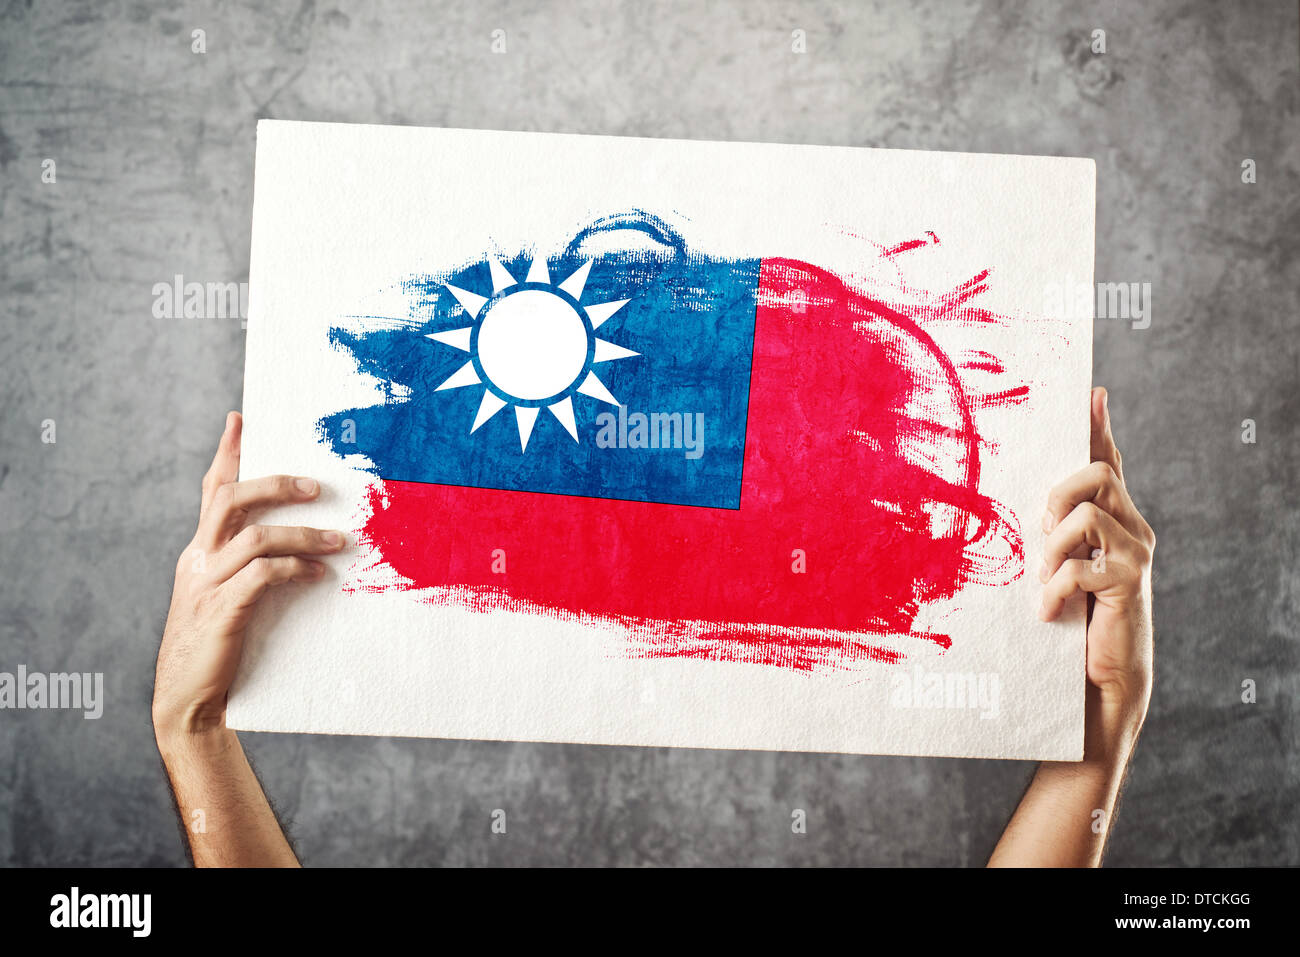 Taiwan-Flagge. Mann, der Banner mit taiwanesischer Flagge hält. Nationalmannschaft, Patriotismus Konzept zu unterstützen. Stockfoto